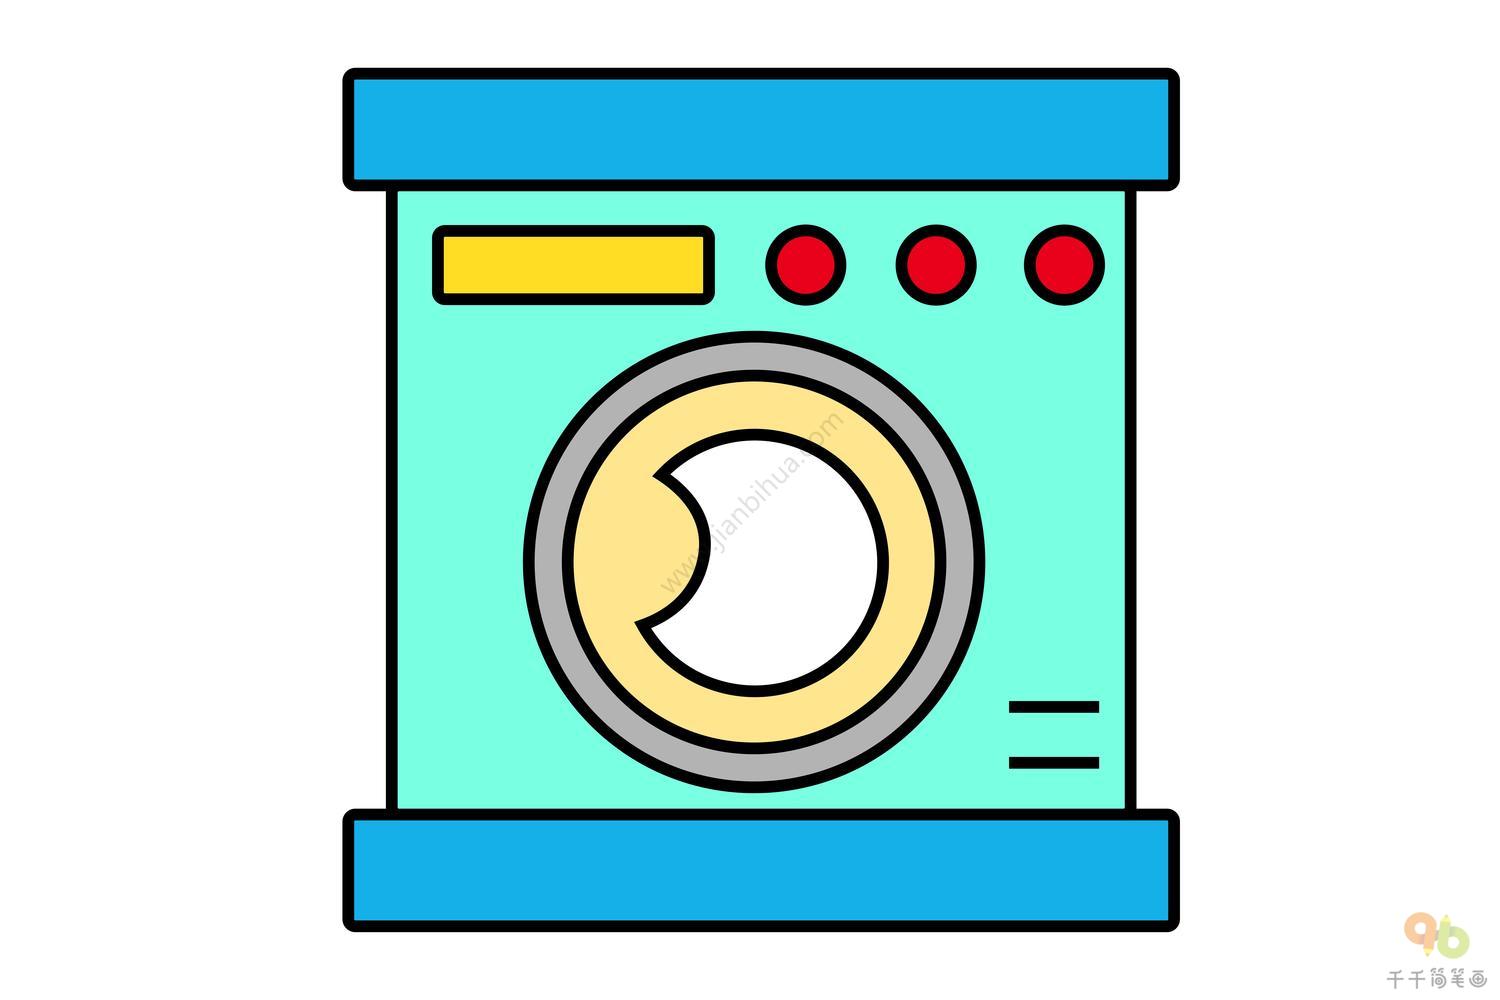 洗衣机- 建E网施工图下载网